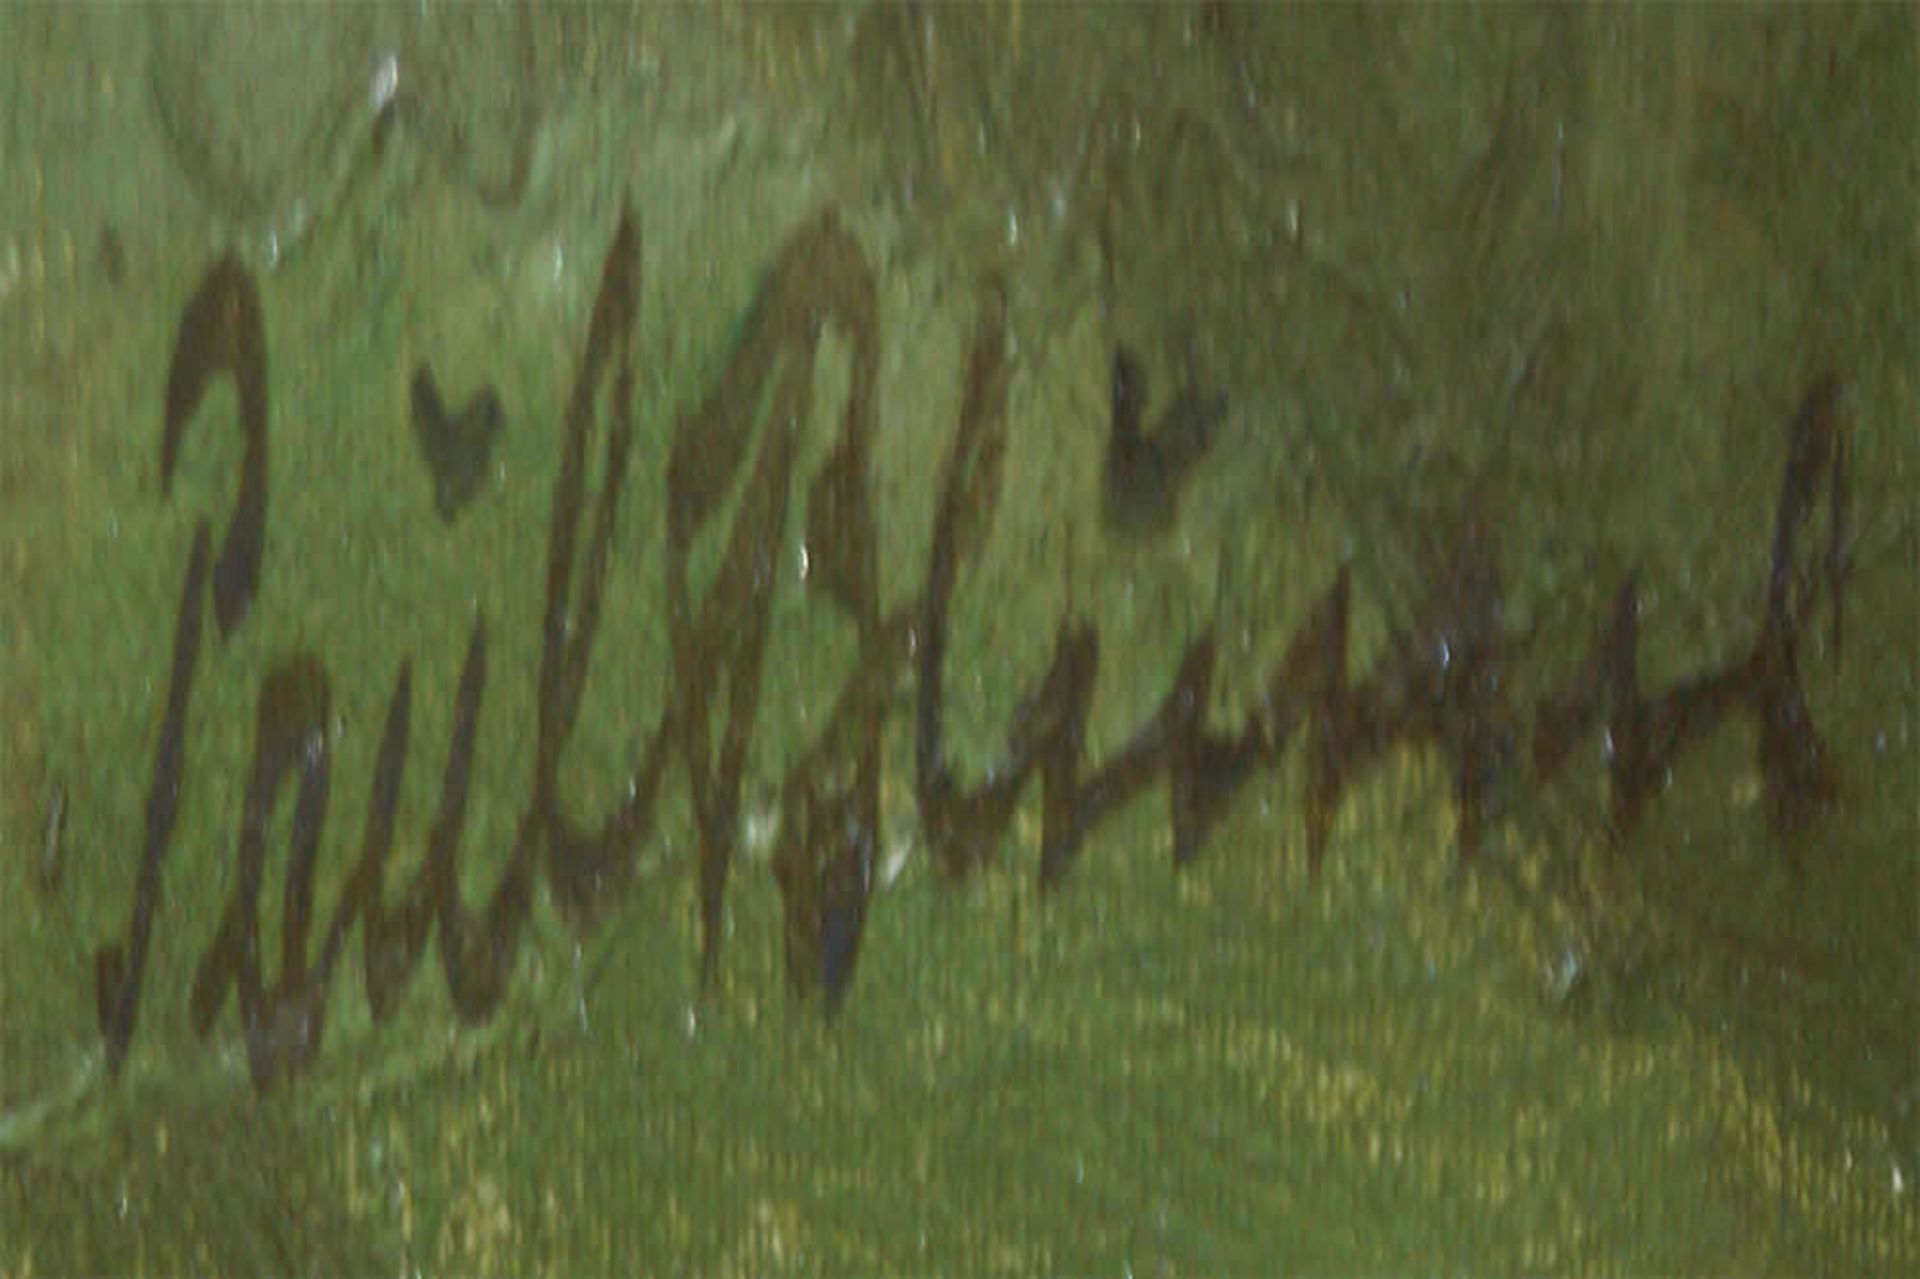 Paul Blume (1900-1981), Ölgemälde auf Leinwand, "Heidelandschaft", rechts unten Signatur Paul Blume. - Bild 2 aus 3